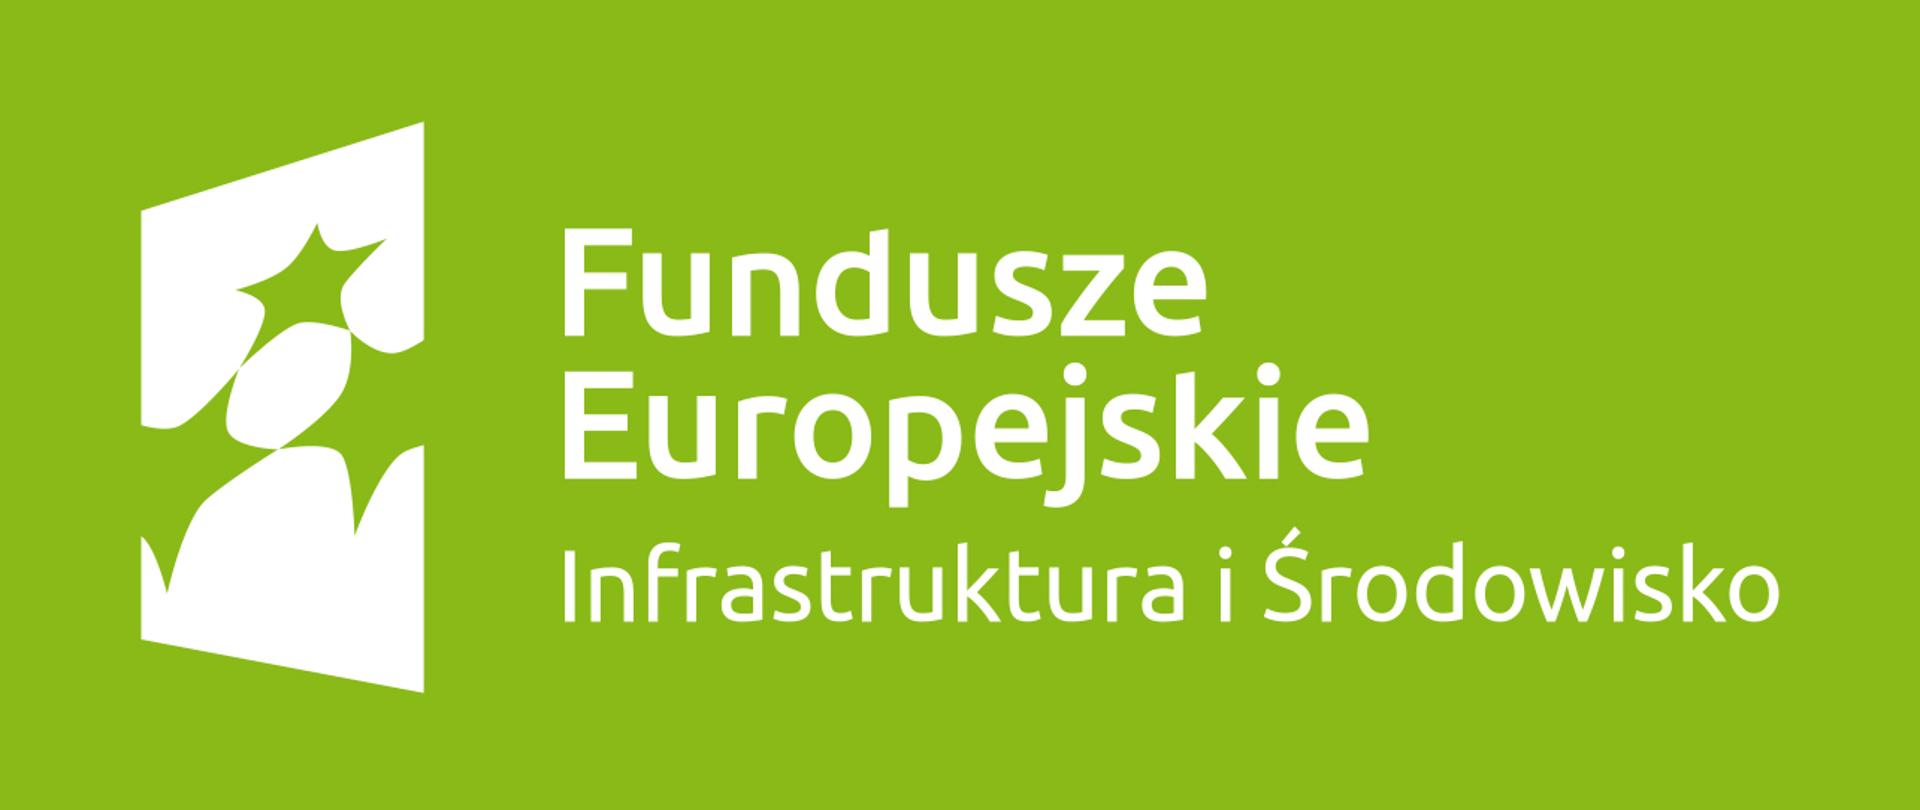 Logo Funduszy Europejskich Infrastruktura i Środowisko na zielonym tle